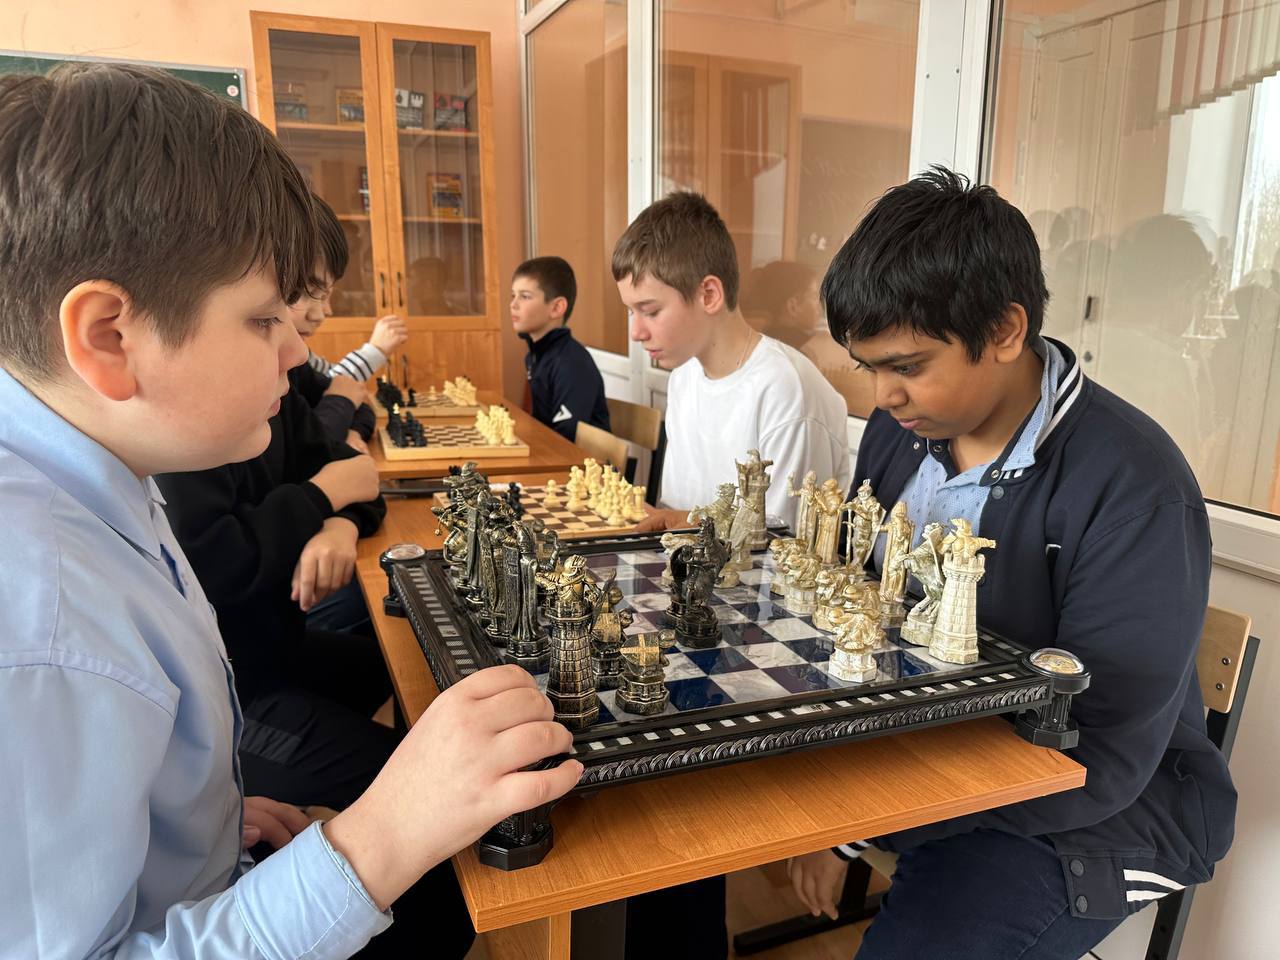 В честь Дня защитника Отечества в нашей школе состоялся шахматный турнир.